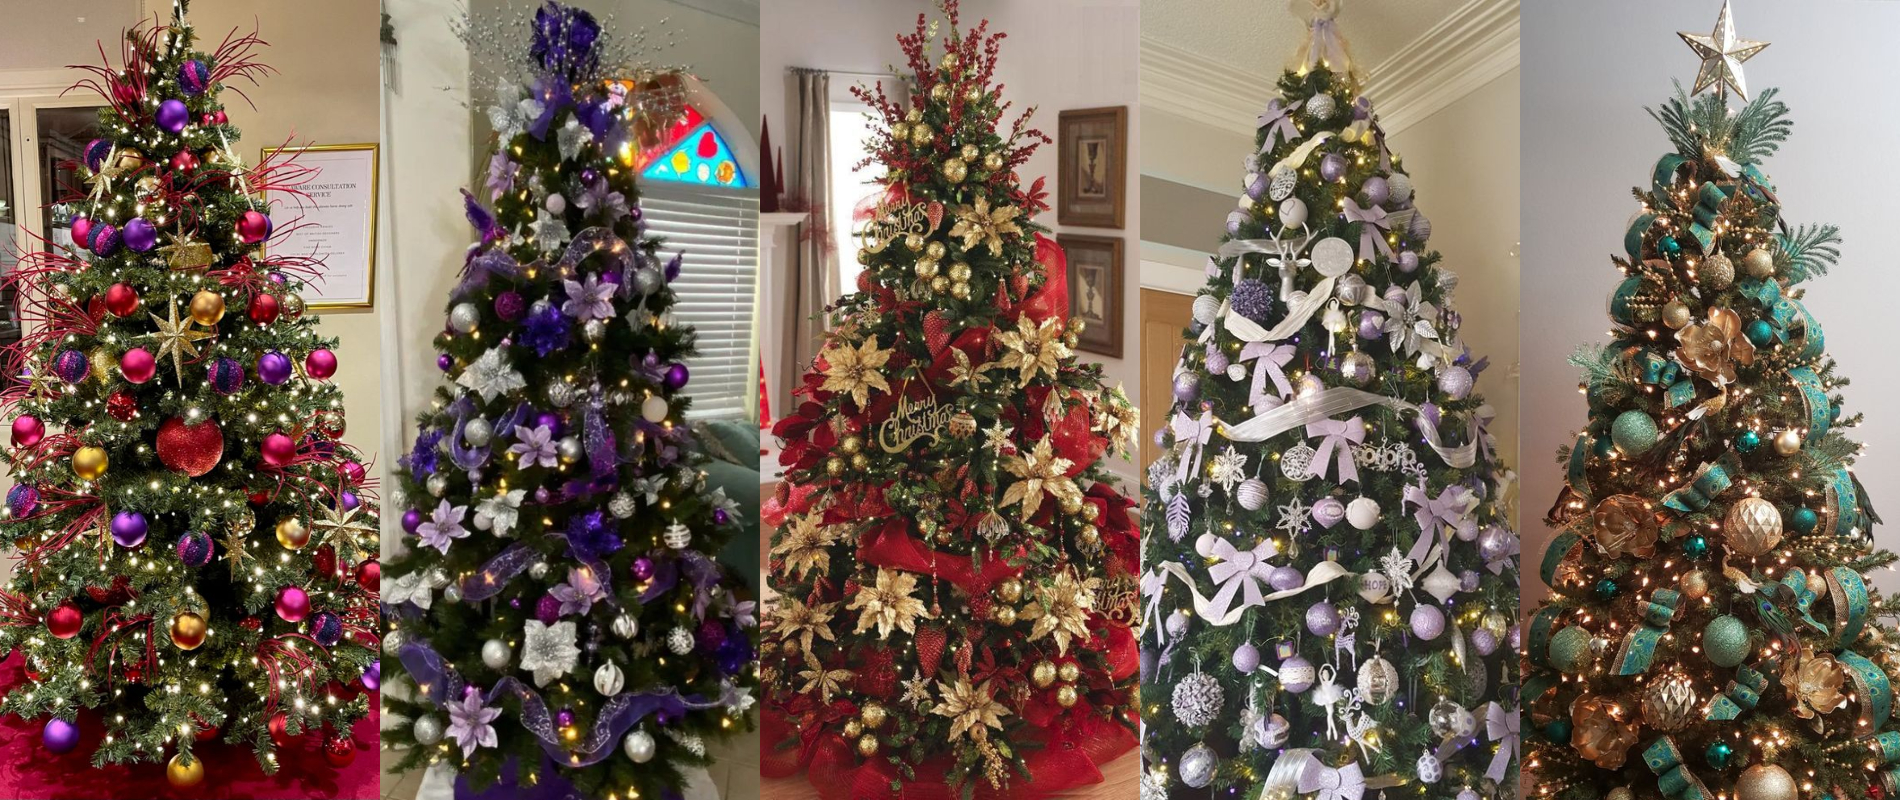 Decoración navideña maximalista. Decoración de árbol de navidad.